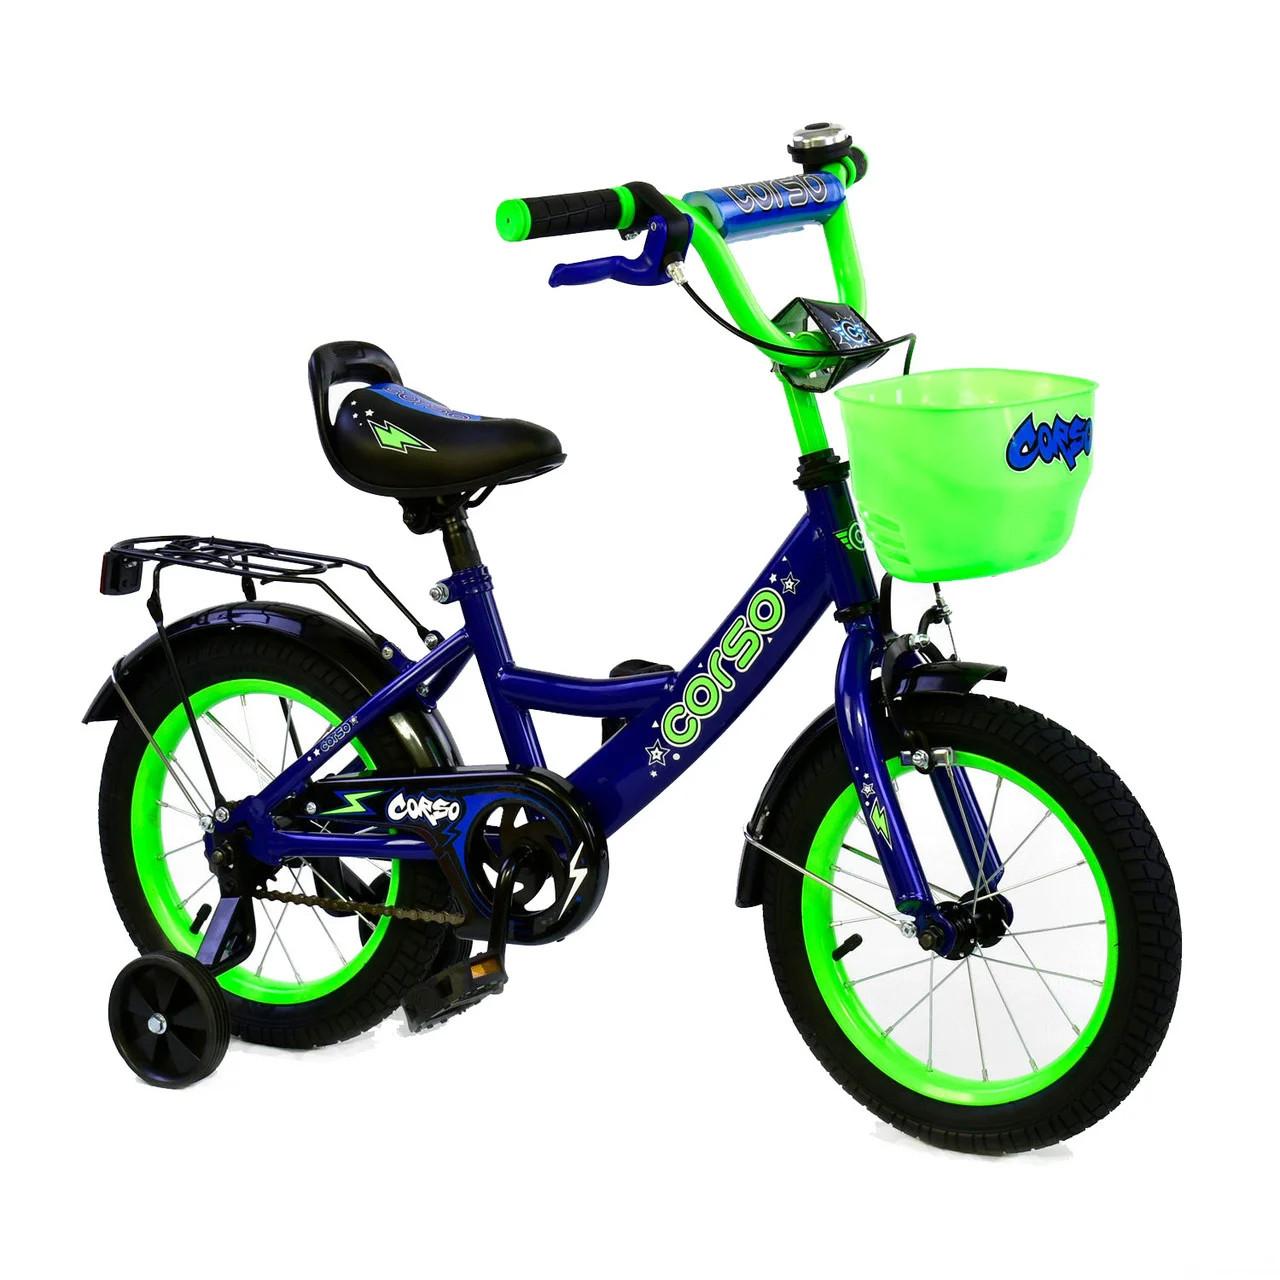 Велосипед 14 дюймов на какой возраст. Велосипед Корсо 14 дюймов. Велосипед Corso 14 синий. Велосипед 14 дюймов синий. Велосипед синий двухколёсный.